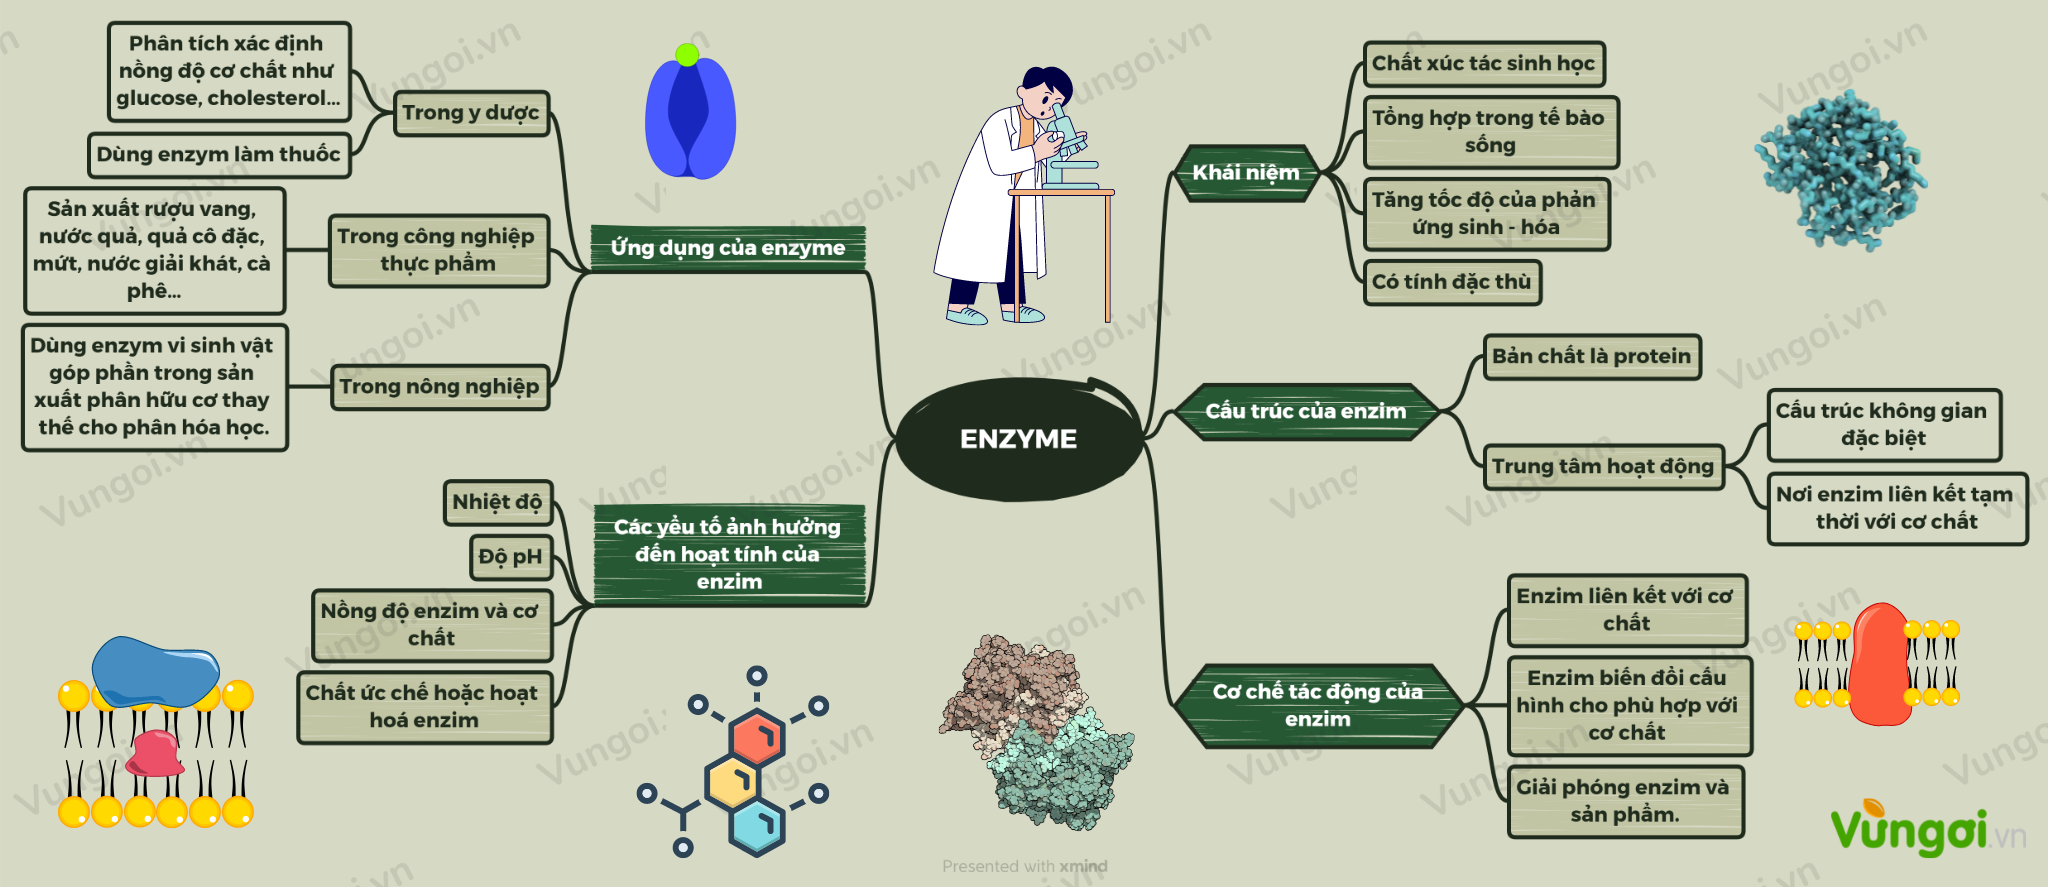 Sơ đồ tư duy enzyme giúp bạn hiểu rõ hơn về quá trình bền vững và giúp bạn tối ưu hóa quá trình sản xuất. Hãy xem ngay hình ảnh liên quan để hiểu rõ hơn về sự phức tạp và hữu ích của sơ đồ tư duy.